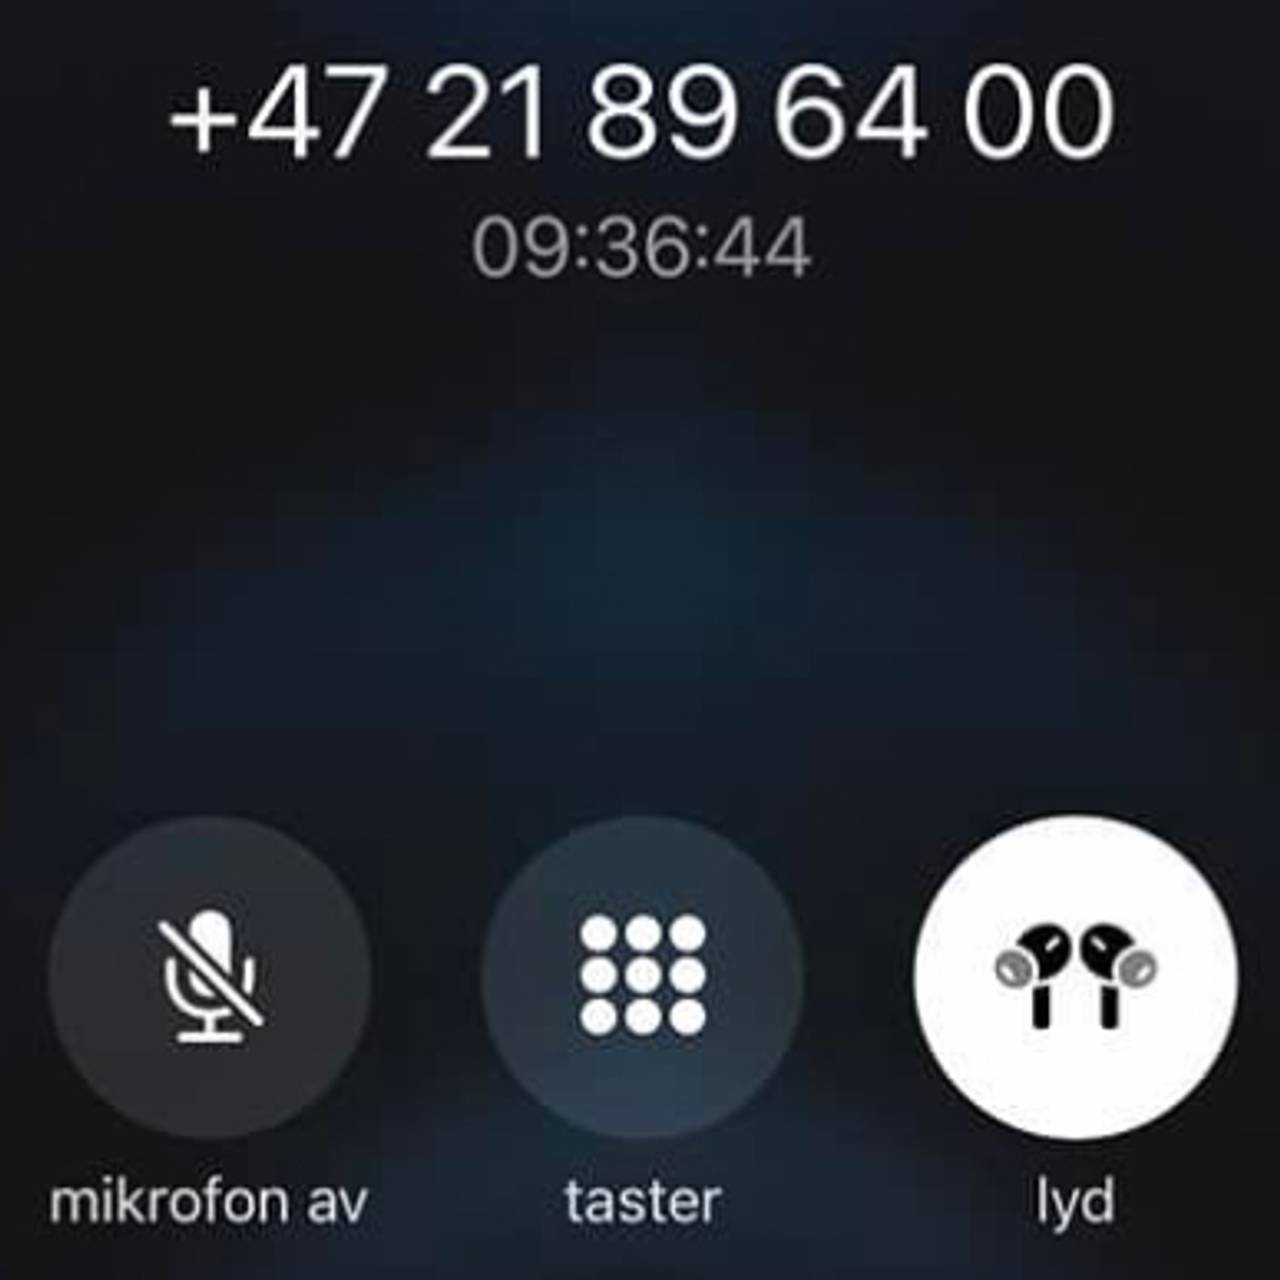 Telefon som viser en norsk person som har prøvd å få kontakt med SAS i over ni timer